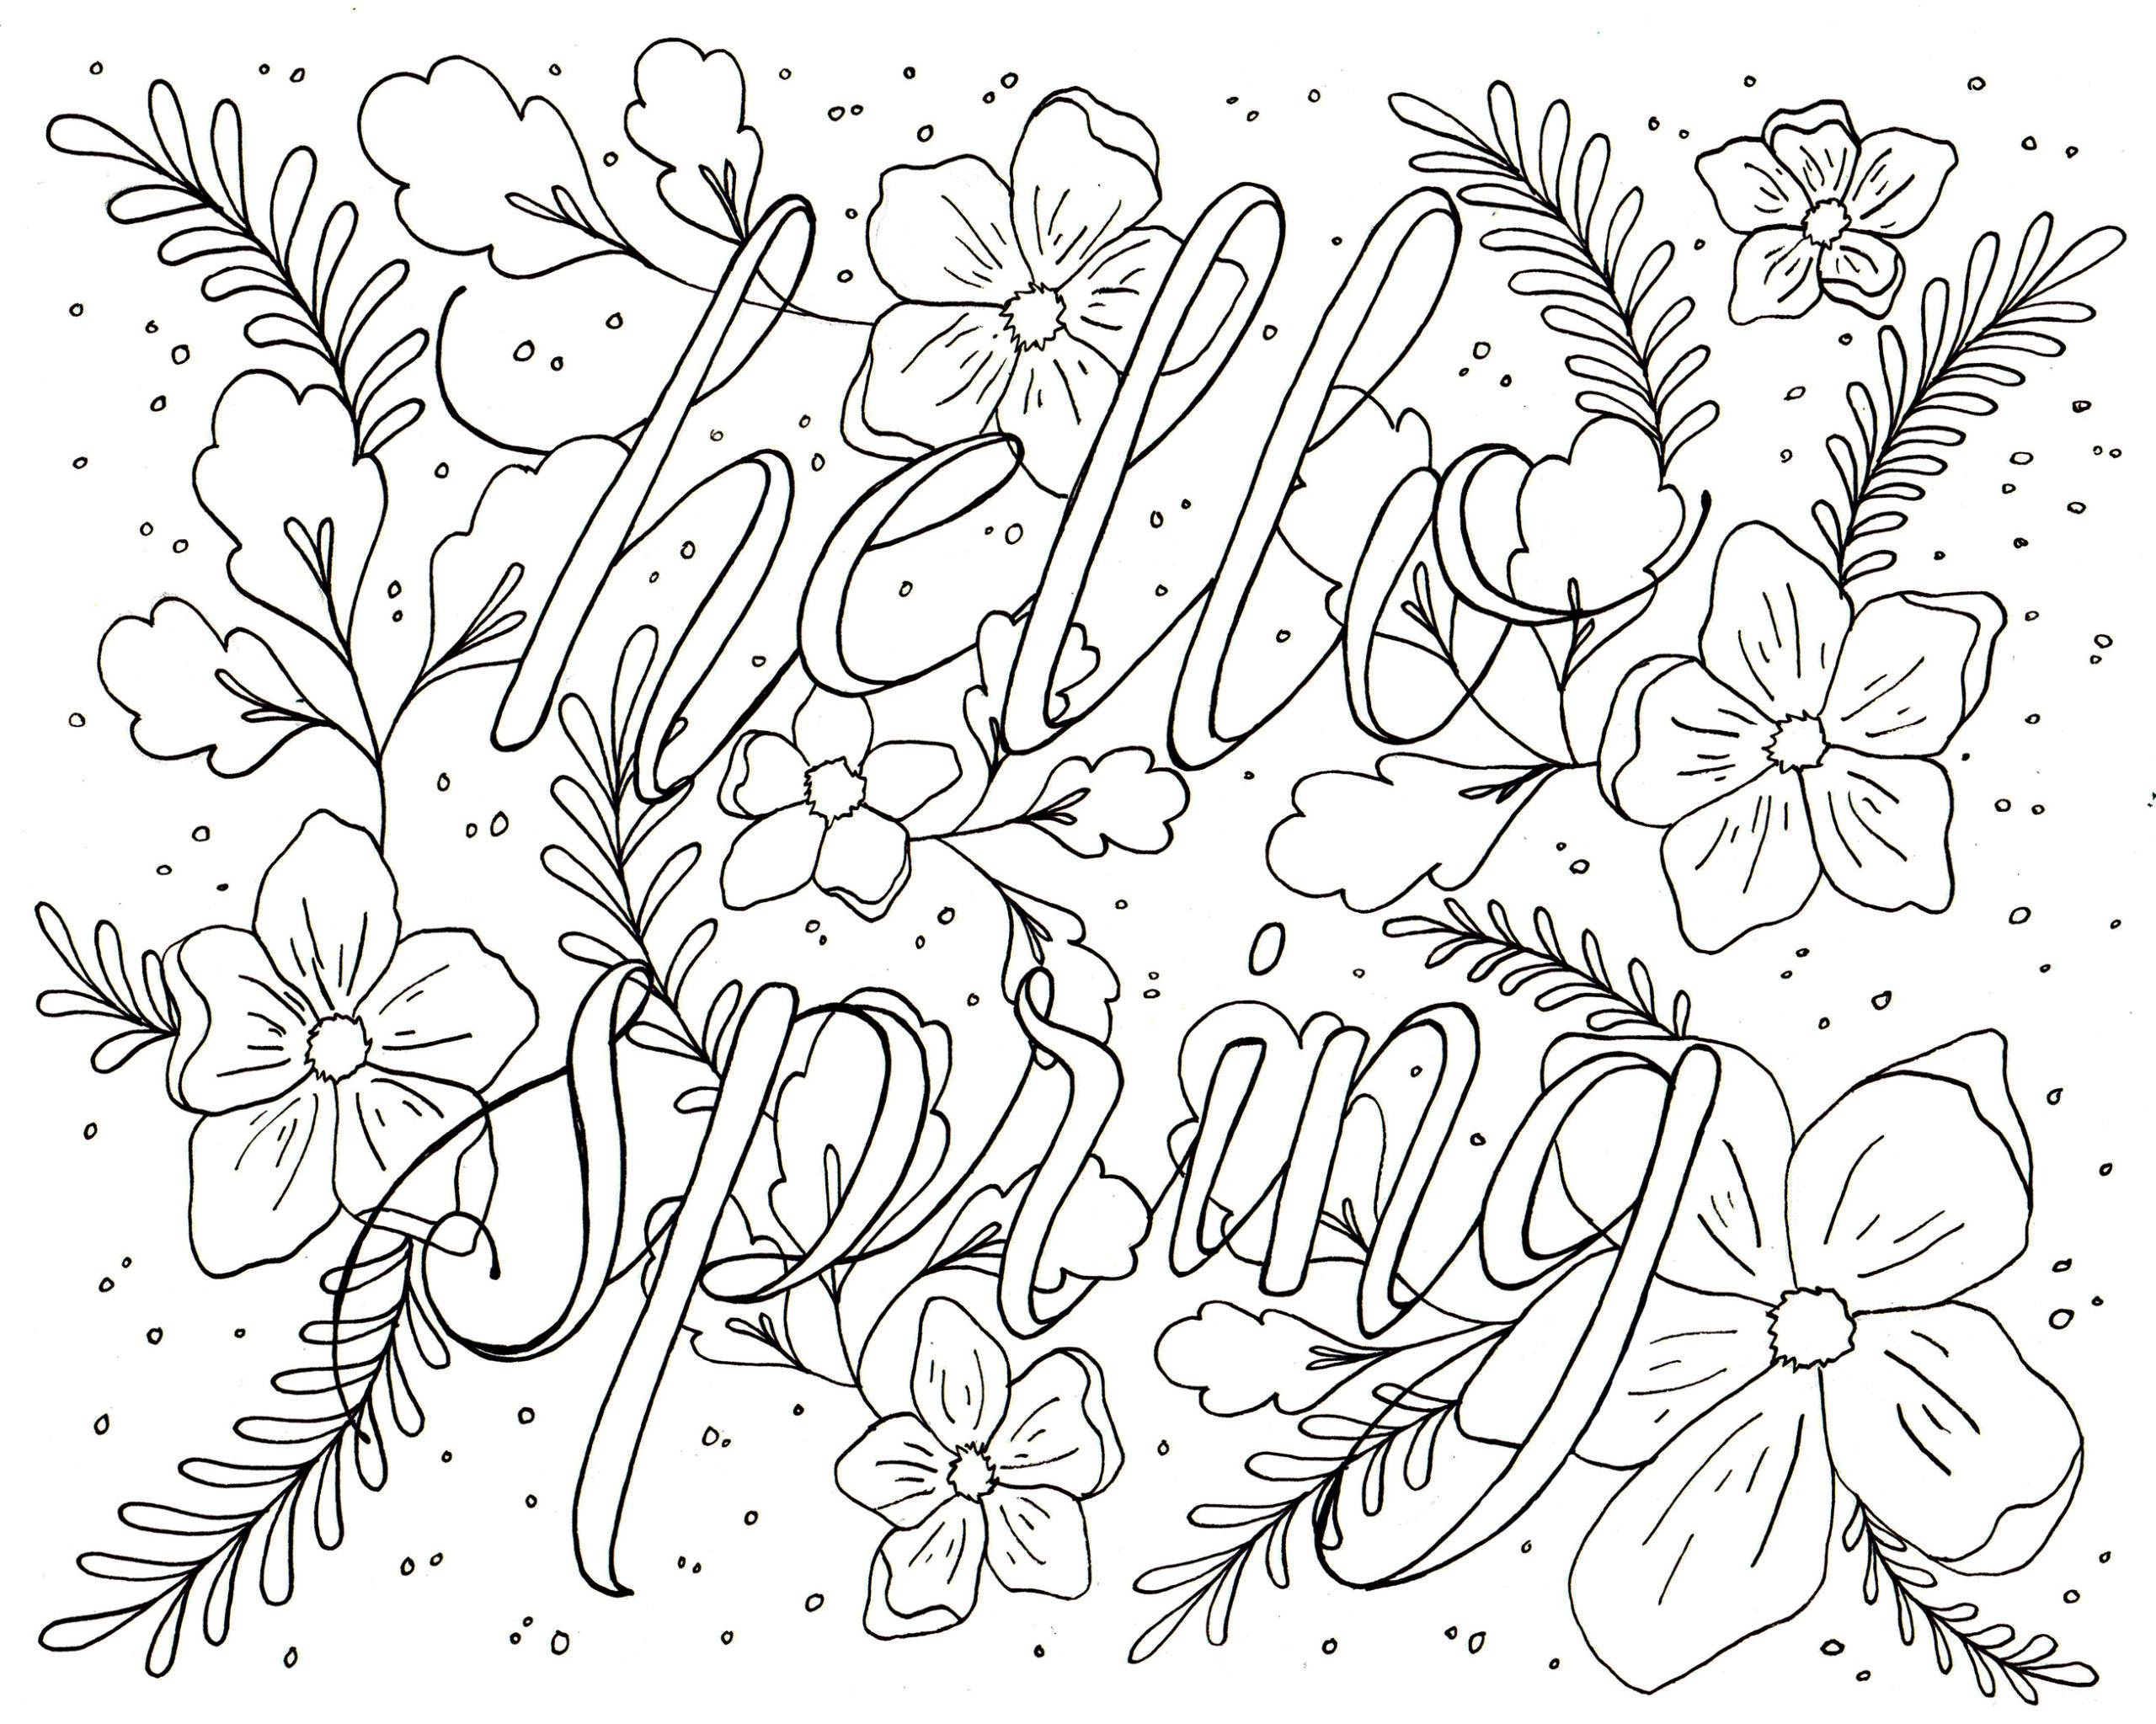 Make this hello spring printable wall art